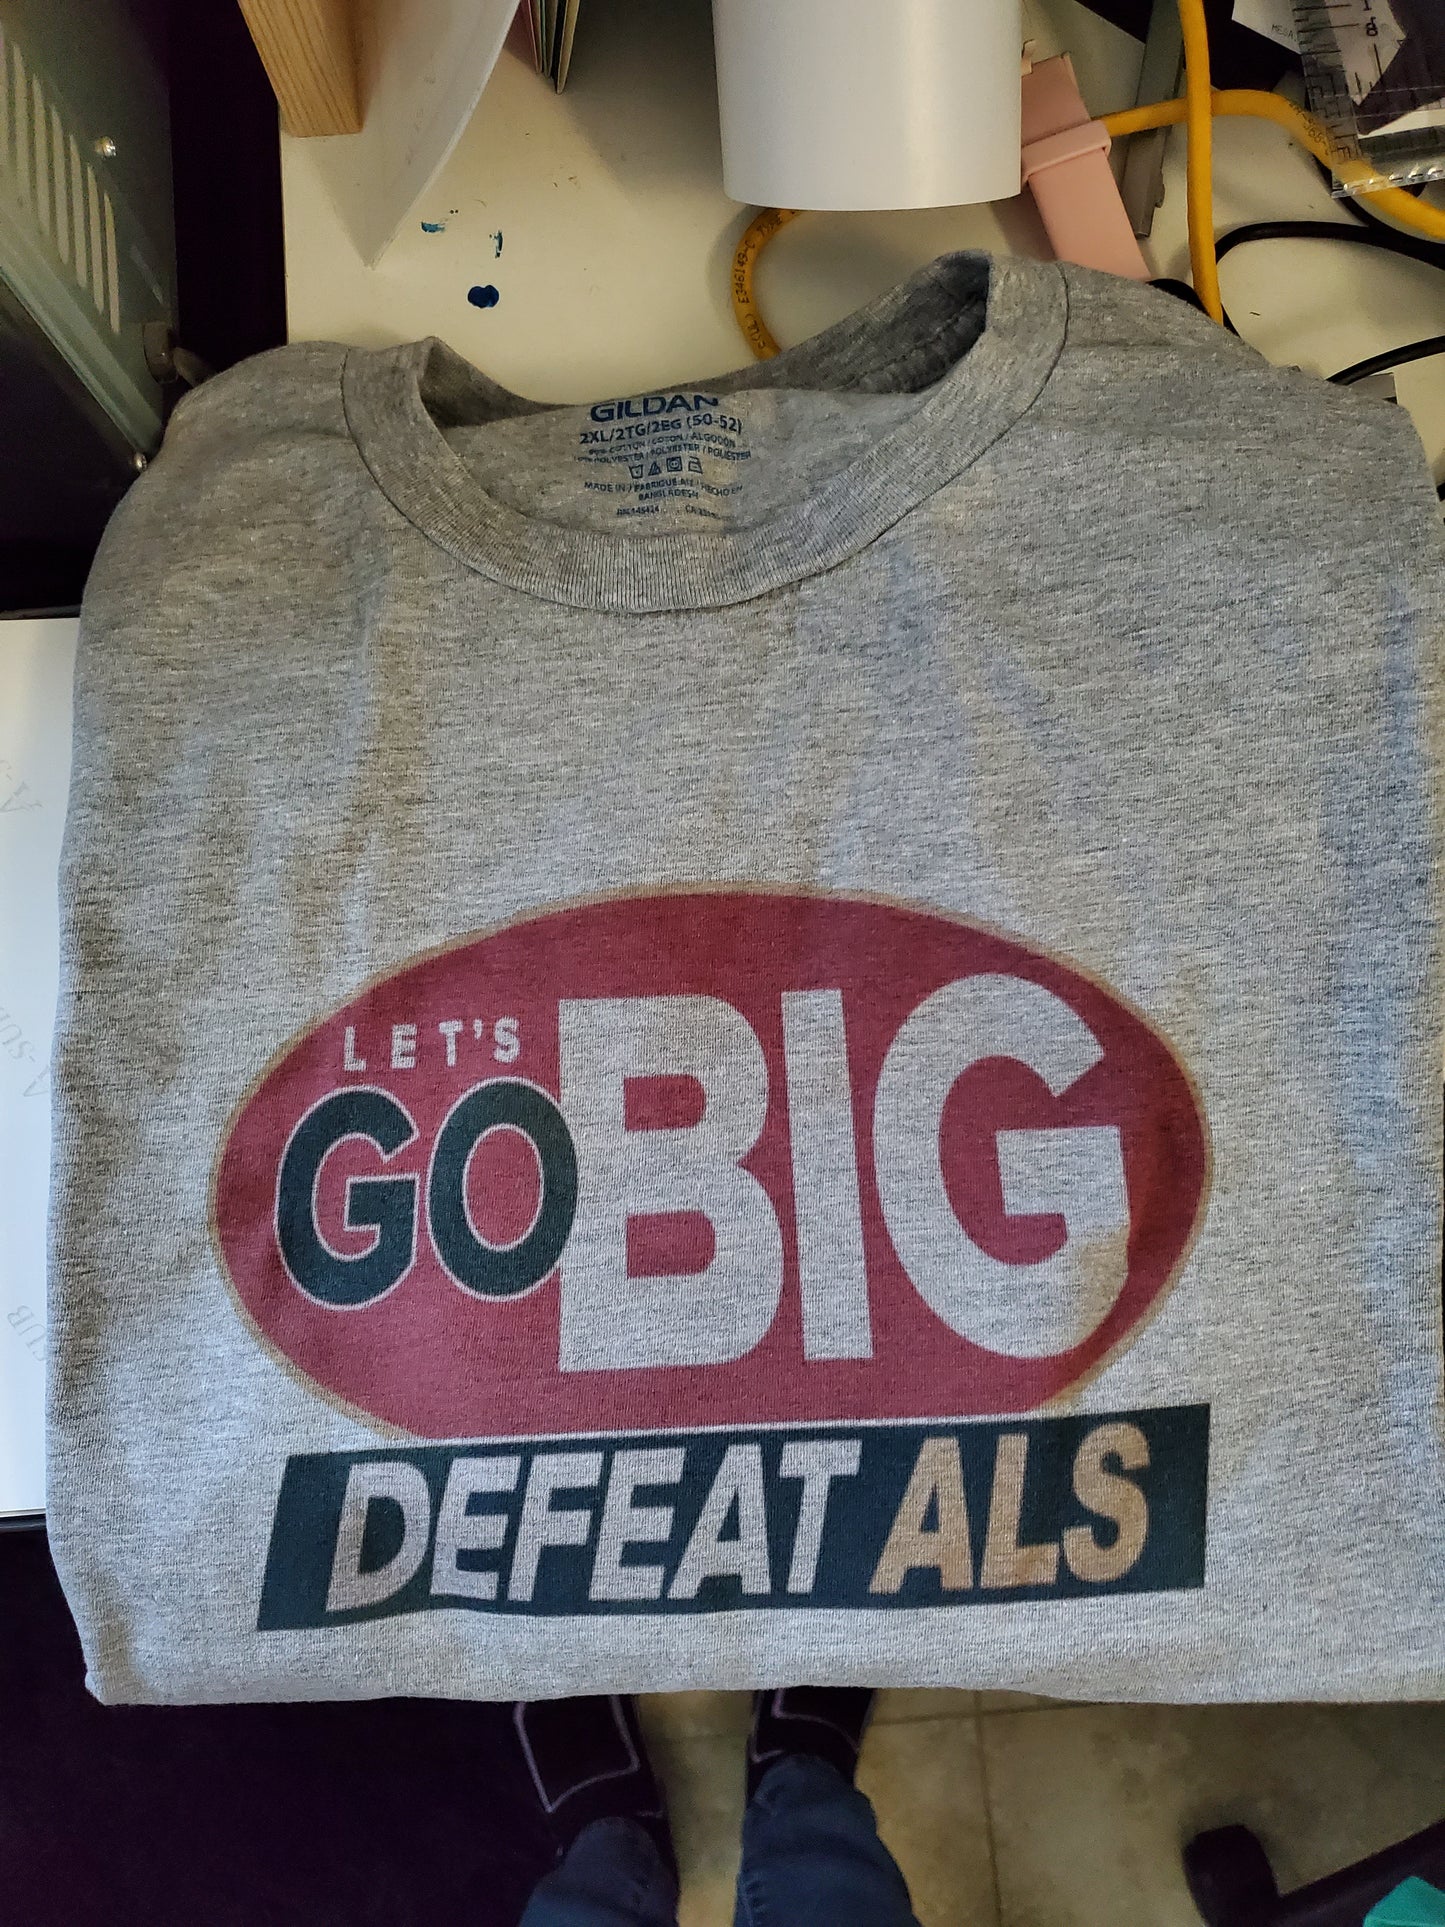 Go big defeat ALS